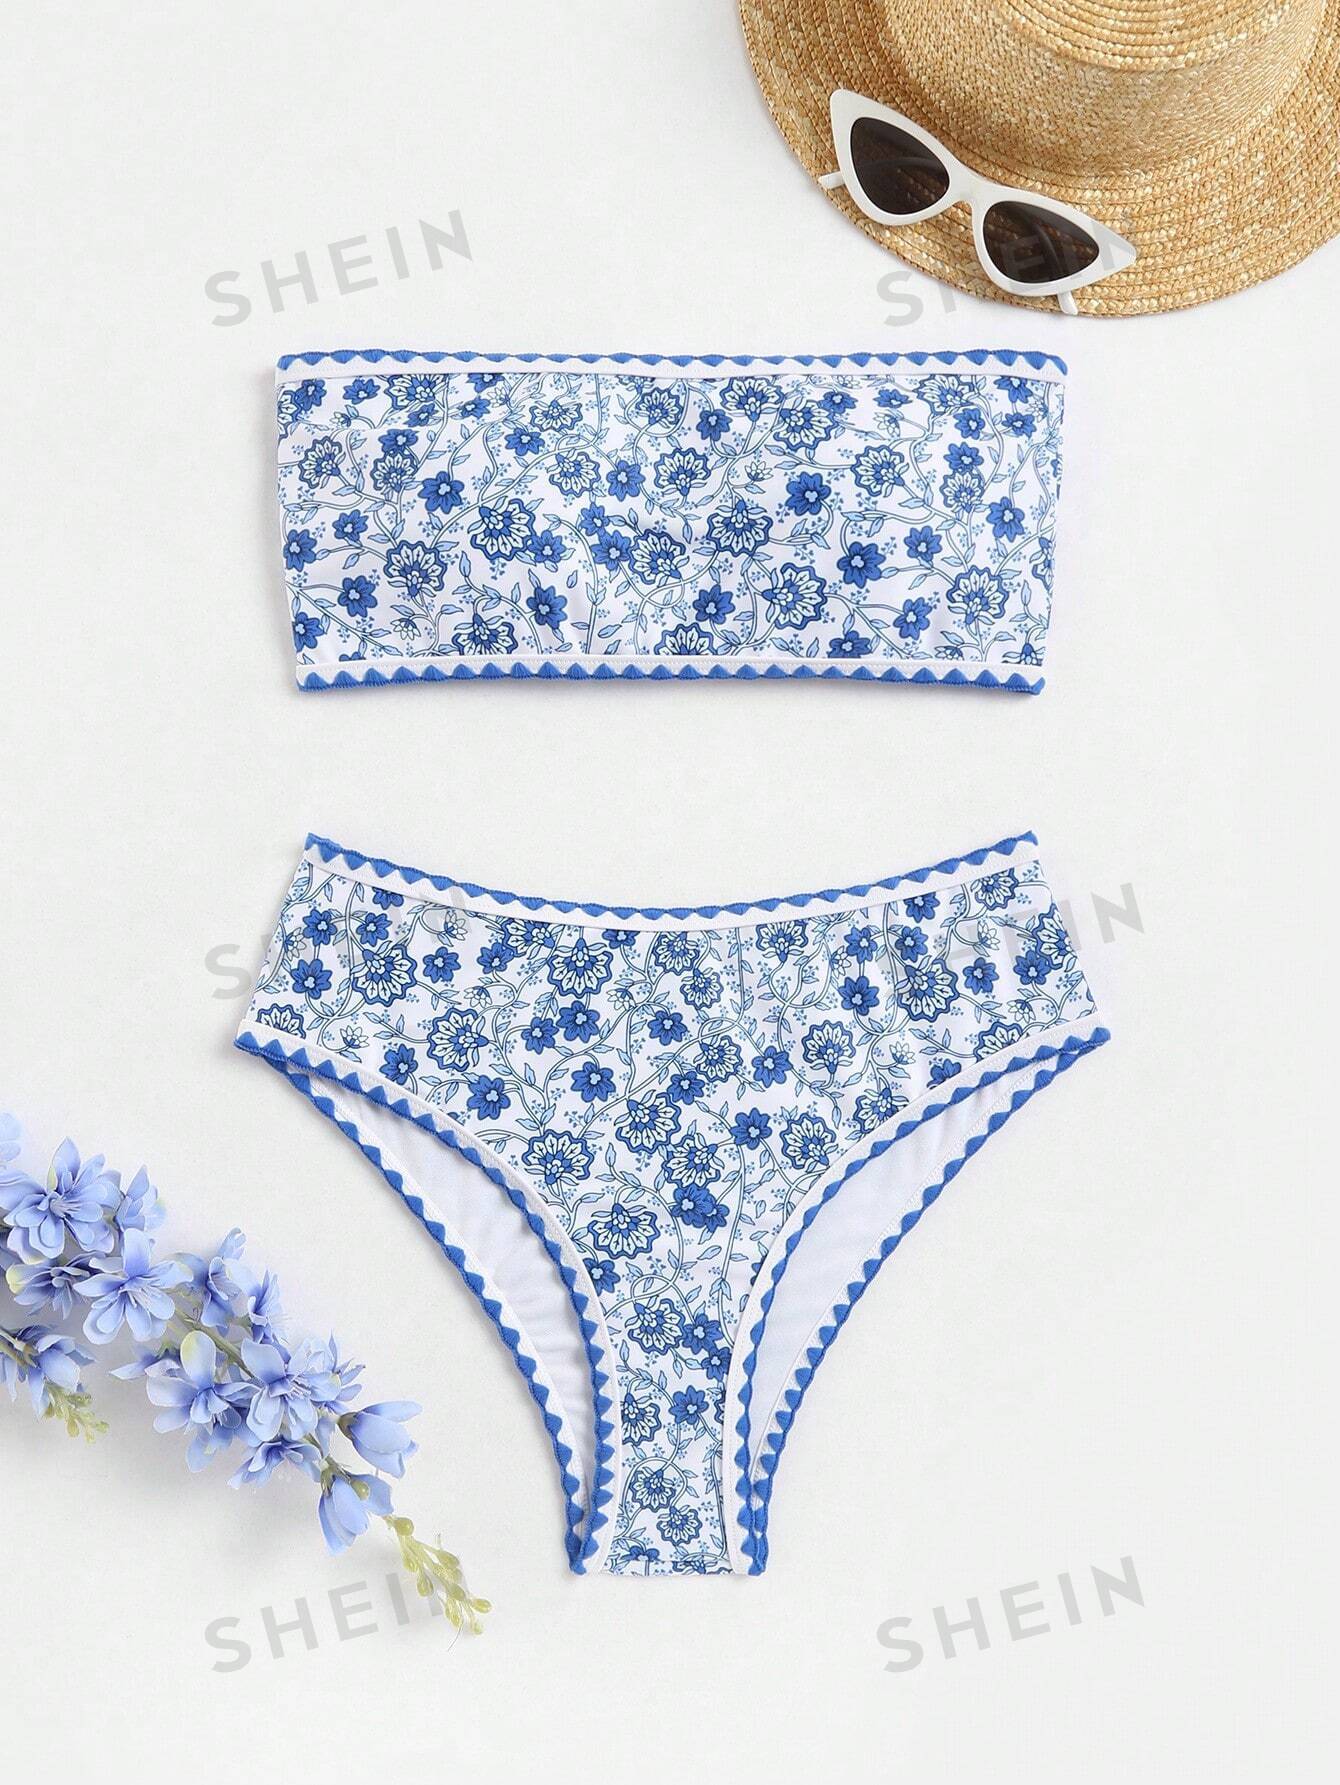 SHEIN Swim BohoFeel Женский комплект бикини без бретелек с цветочным принтом, синий и белый